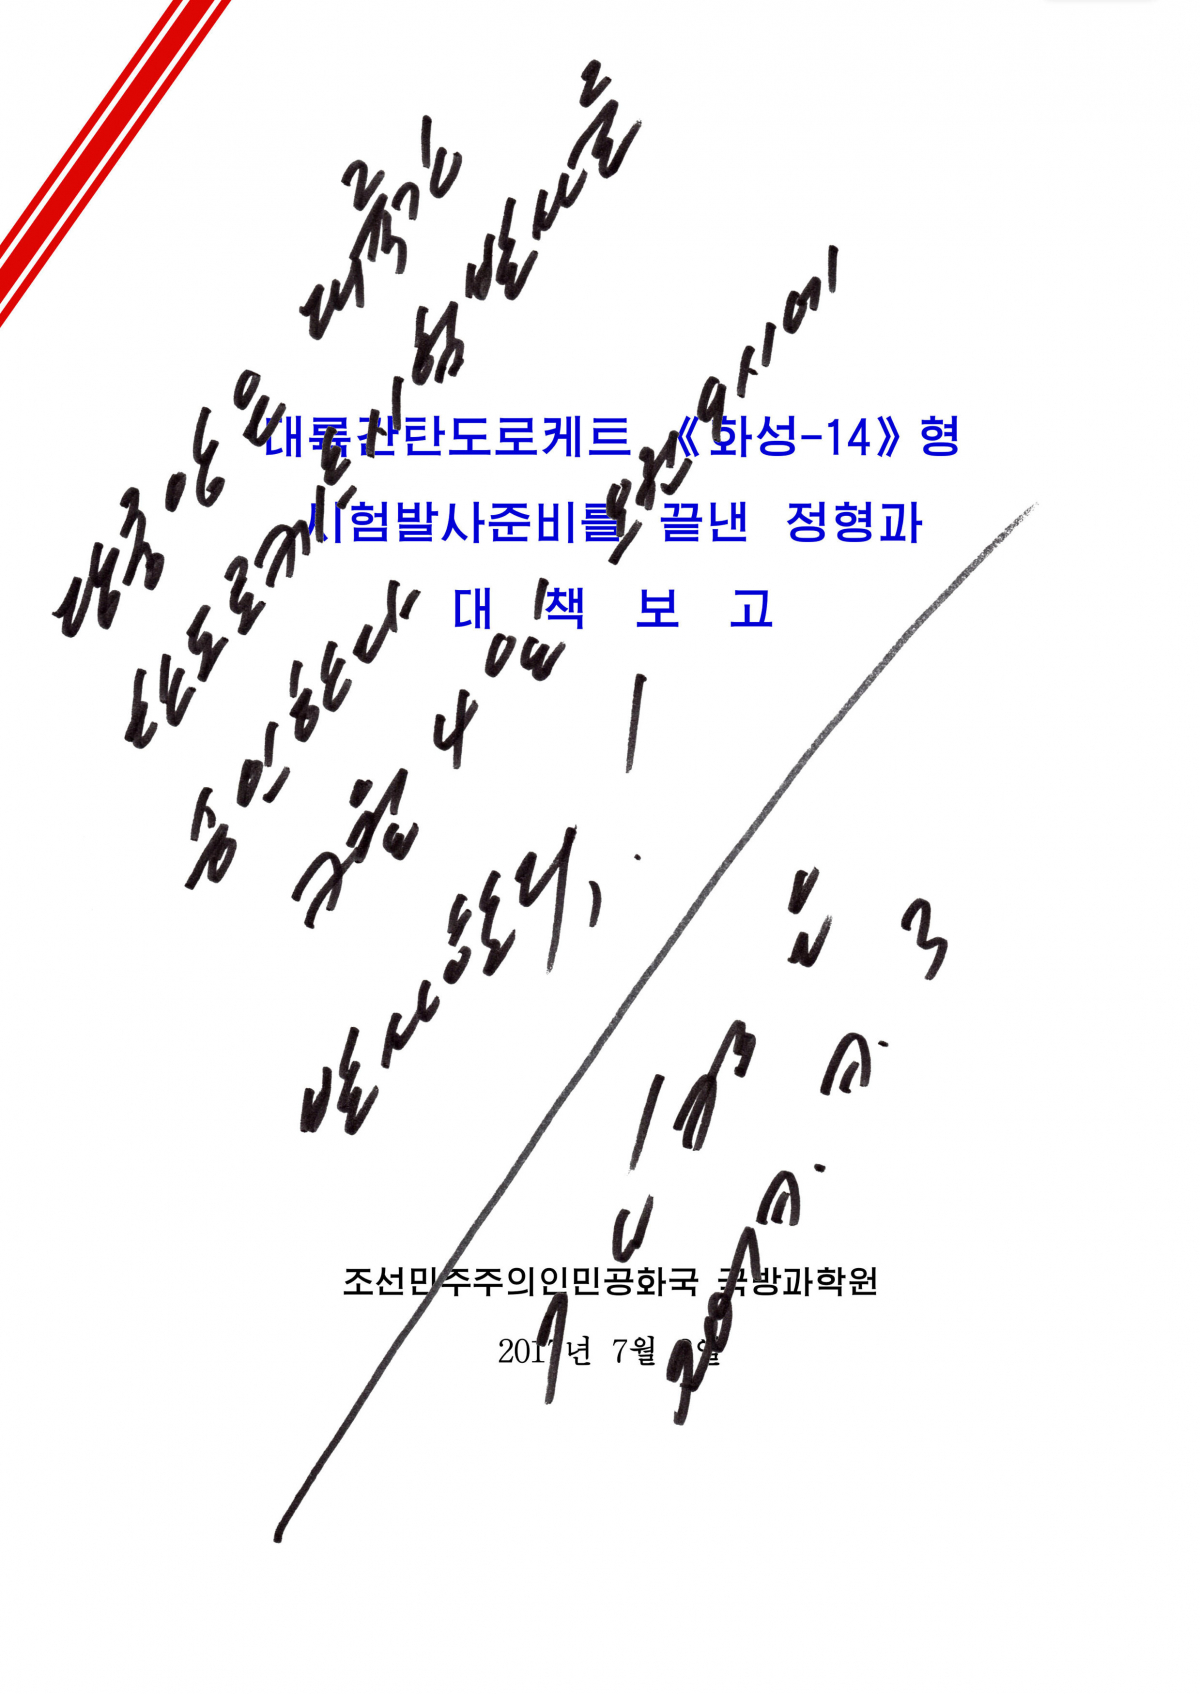 Η διαταγή για την εκτόξευση του πυραύλου με την υπογραφή του Κιμ Γιονγκ Ουν